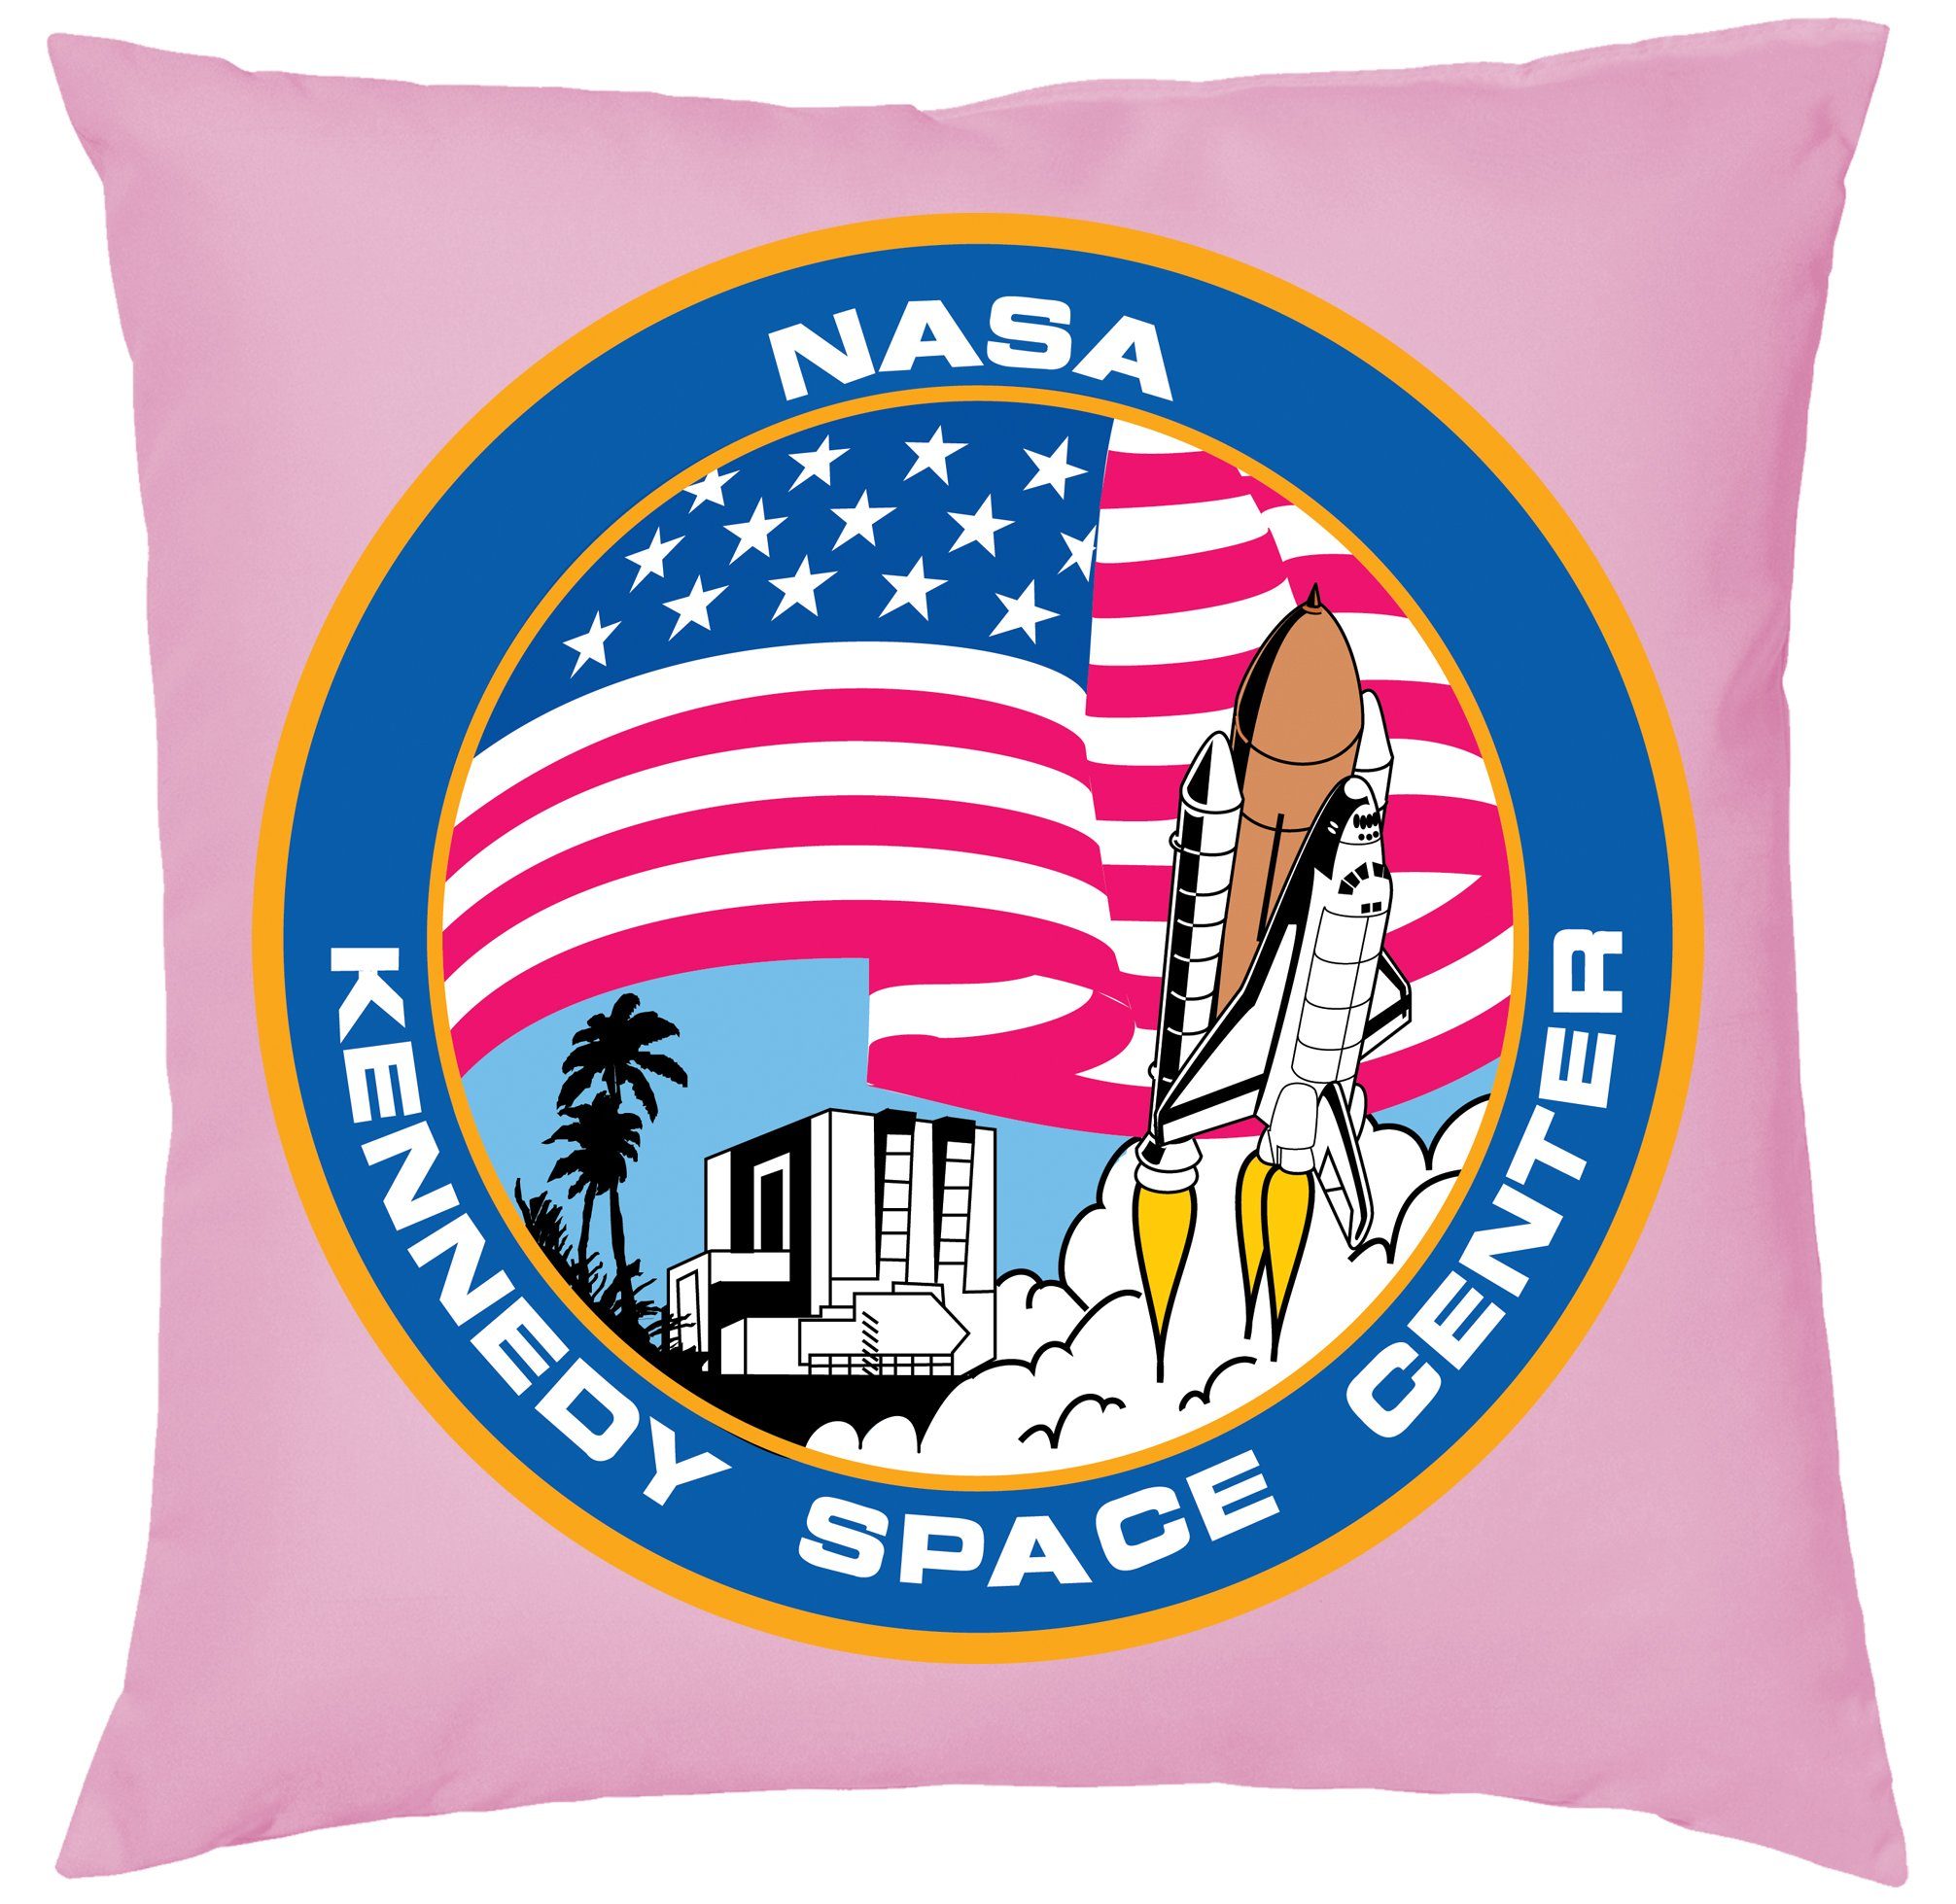 Blondie & Elon Rosa Mond, Kissen NASA Füllung Dekokissen Space Center Mission Brownie mit Kennedy Mars